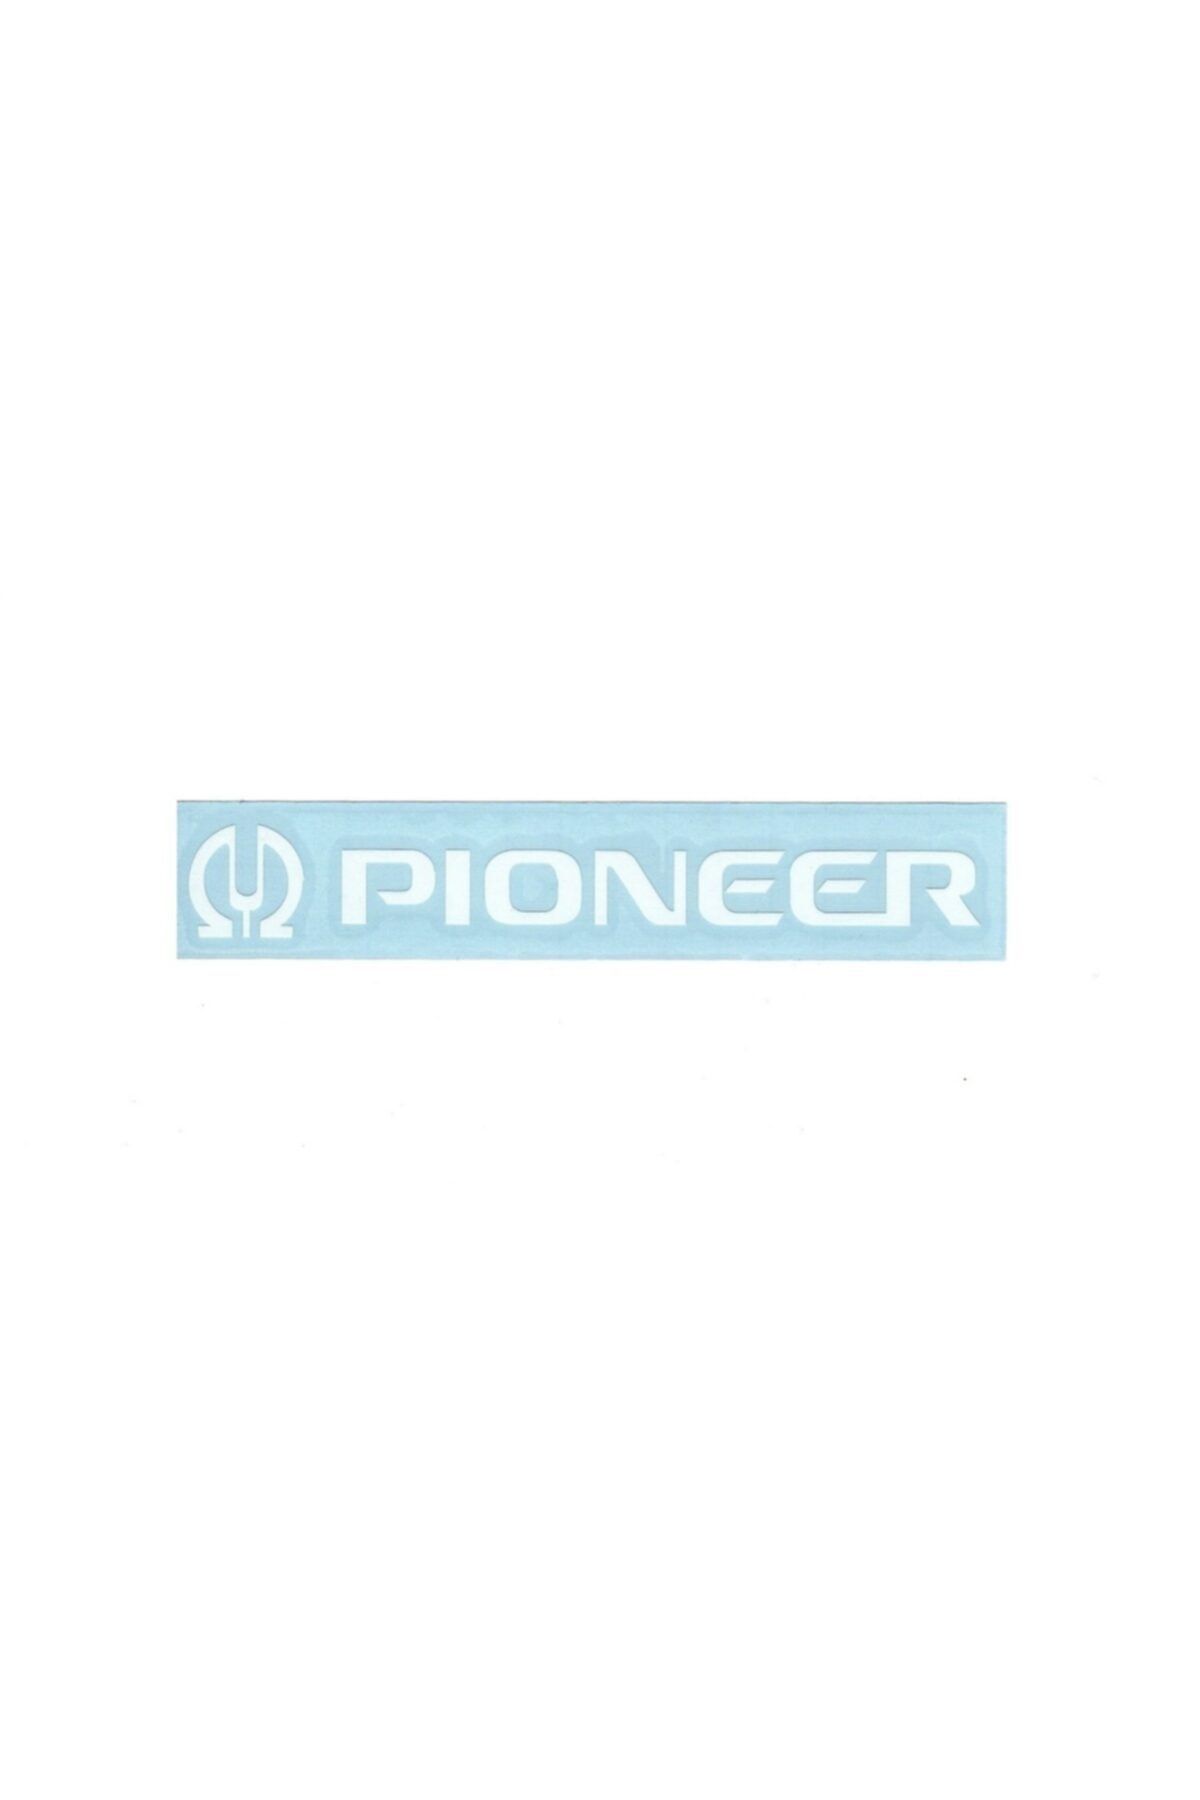 BsElektronik Pıoneer Logo Sticker Beyaz Ölçüleri 15x2.2